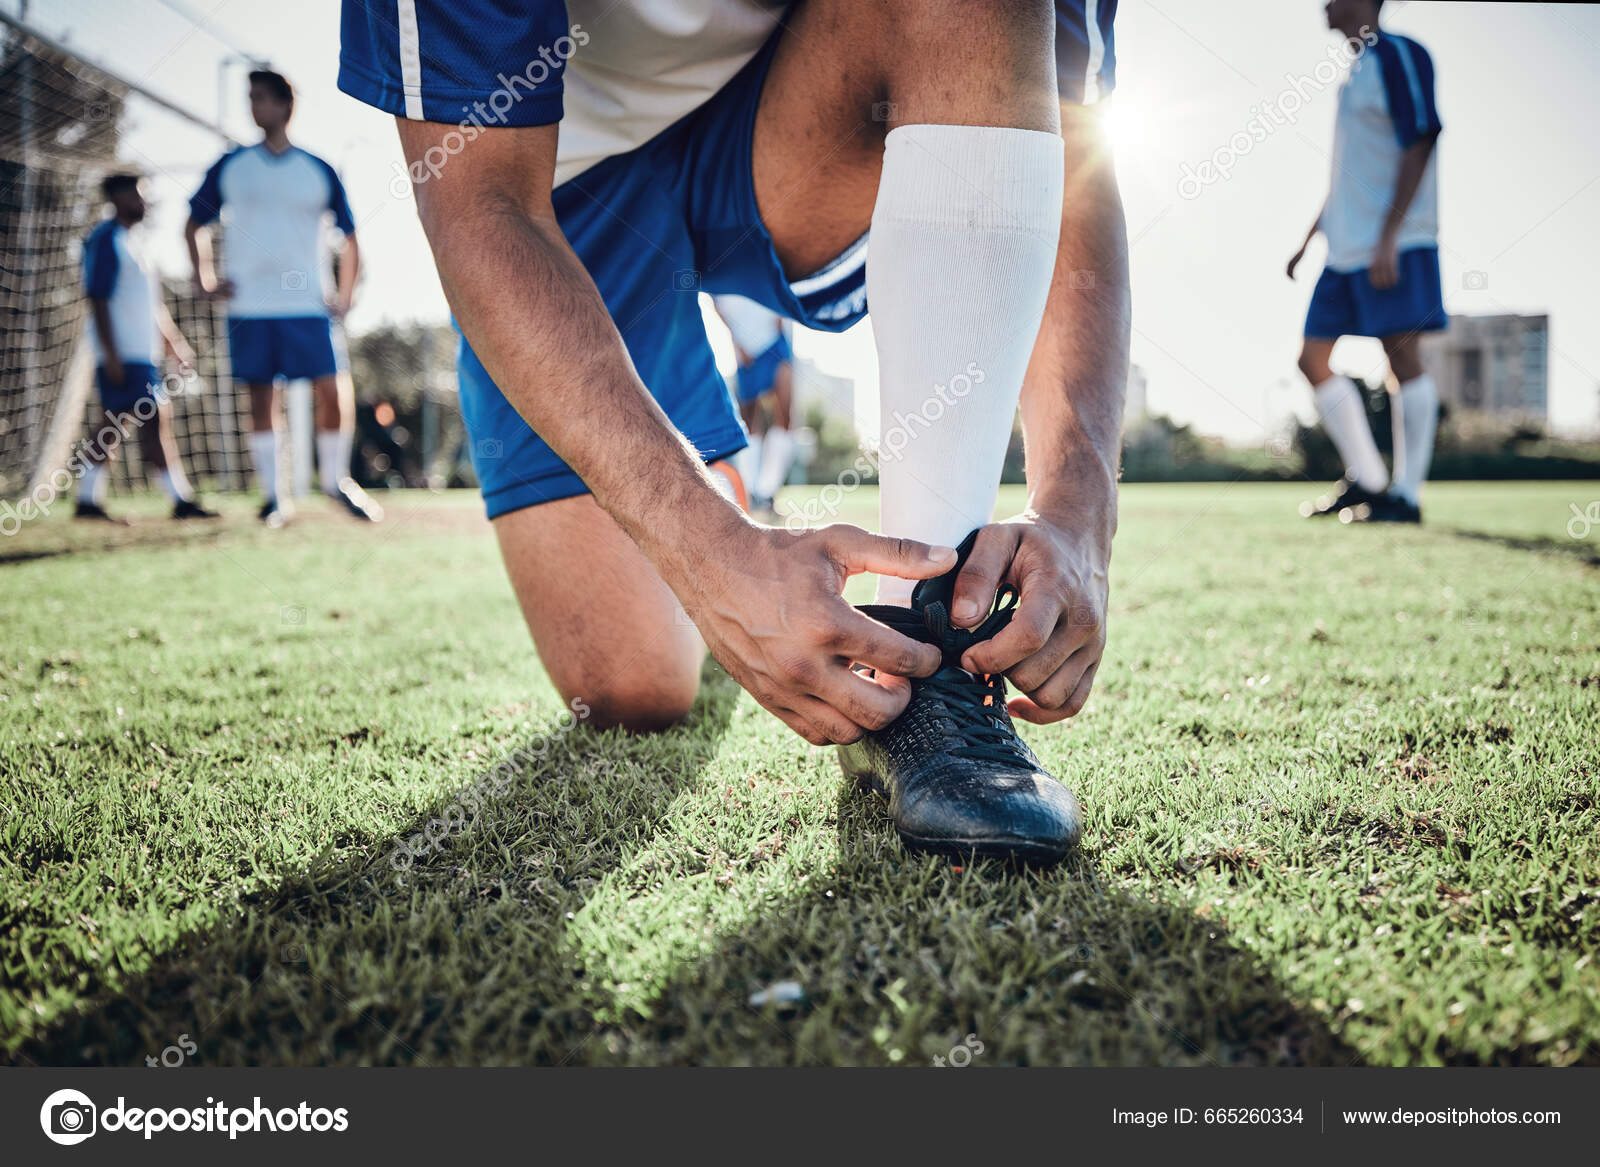 Dia do Futebol: saiba c/ trabalhar no esporte sem ser atleta